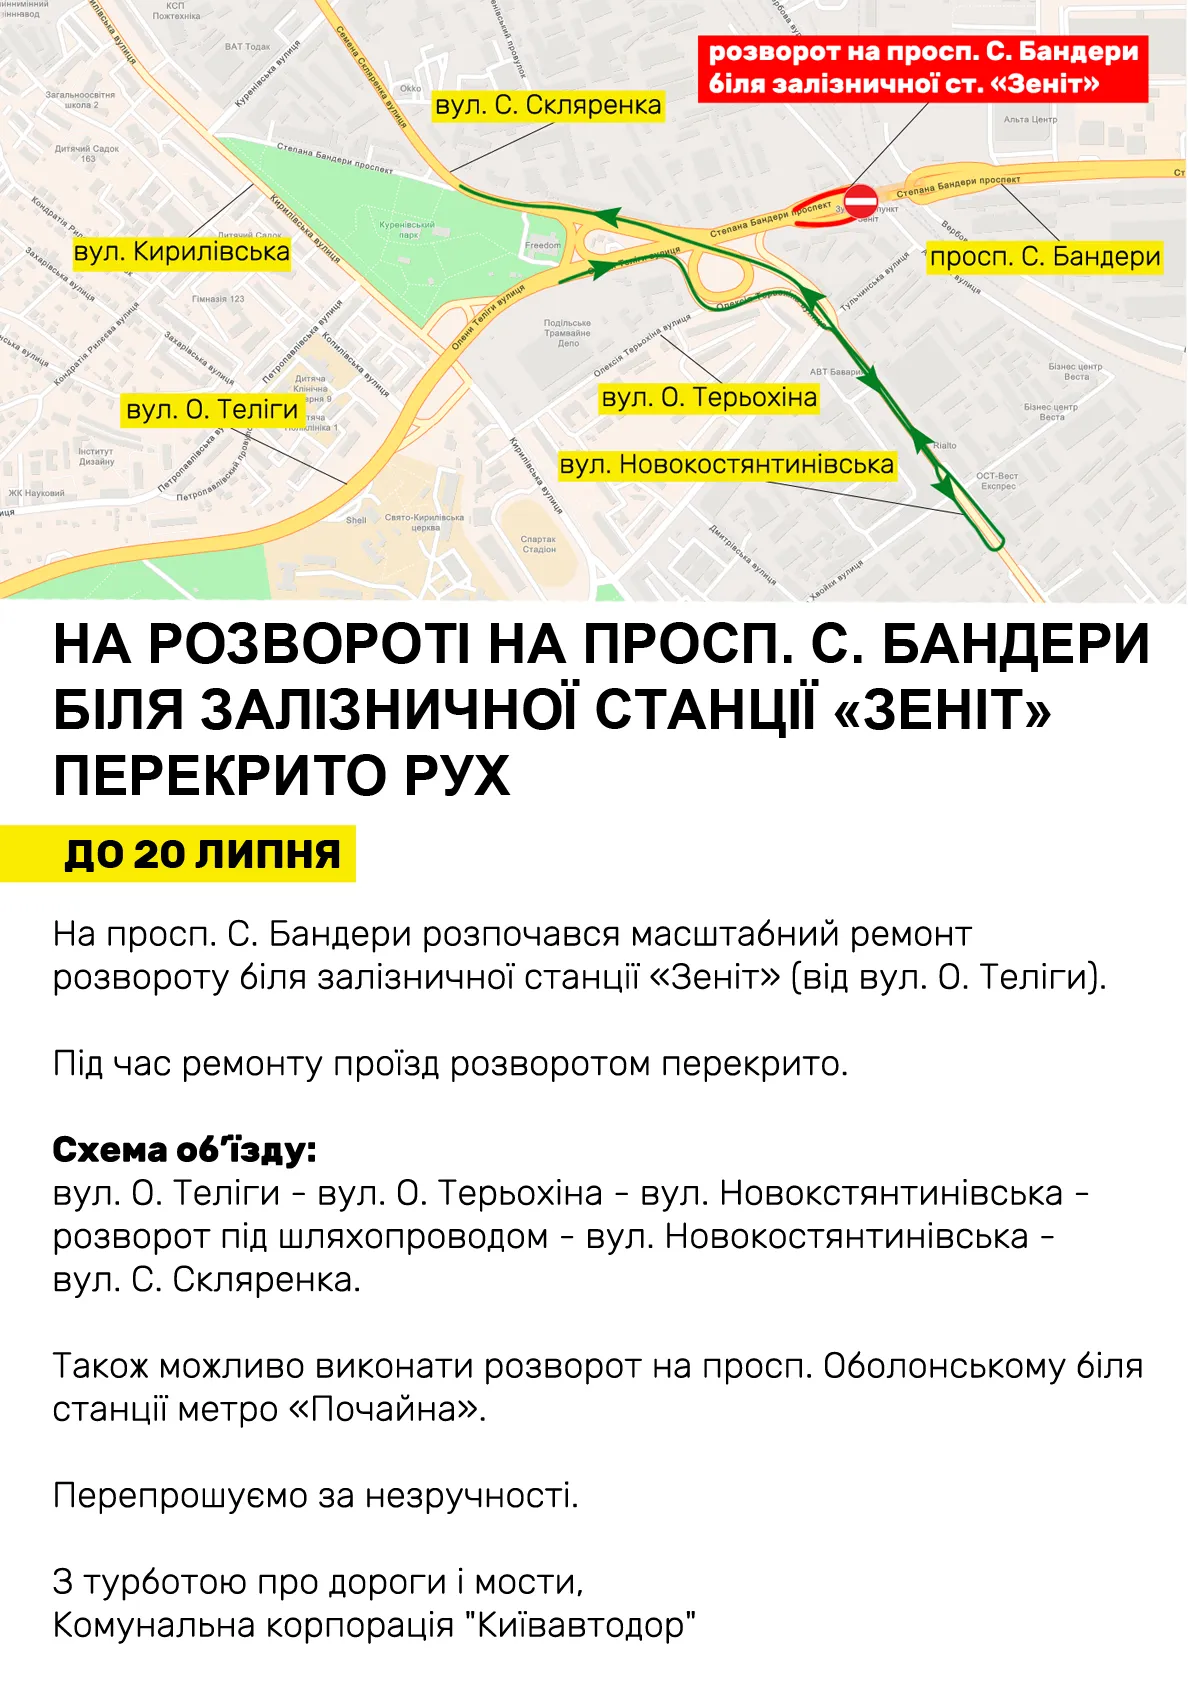 В Киеве закрыли разворот на проспекте Бандеры: схема объезда